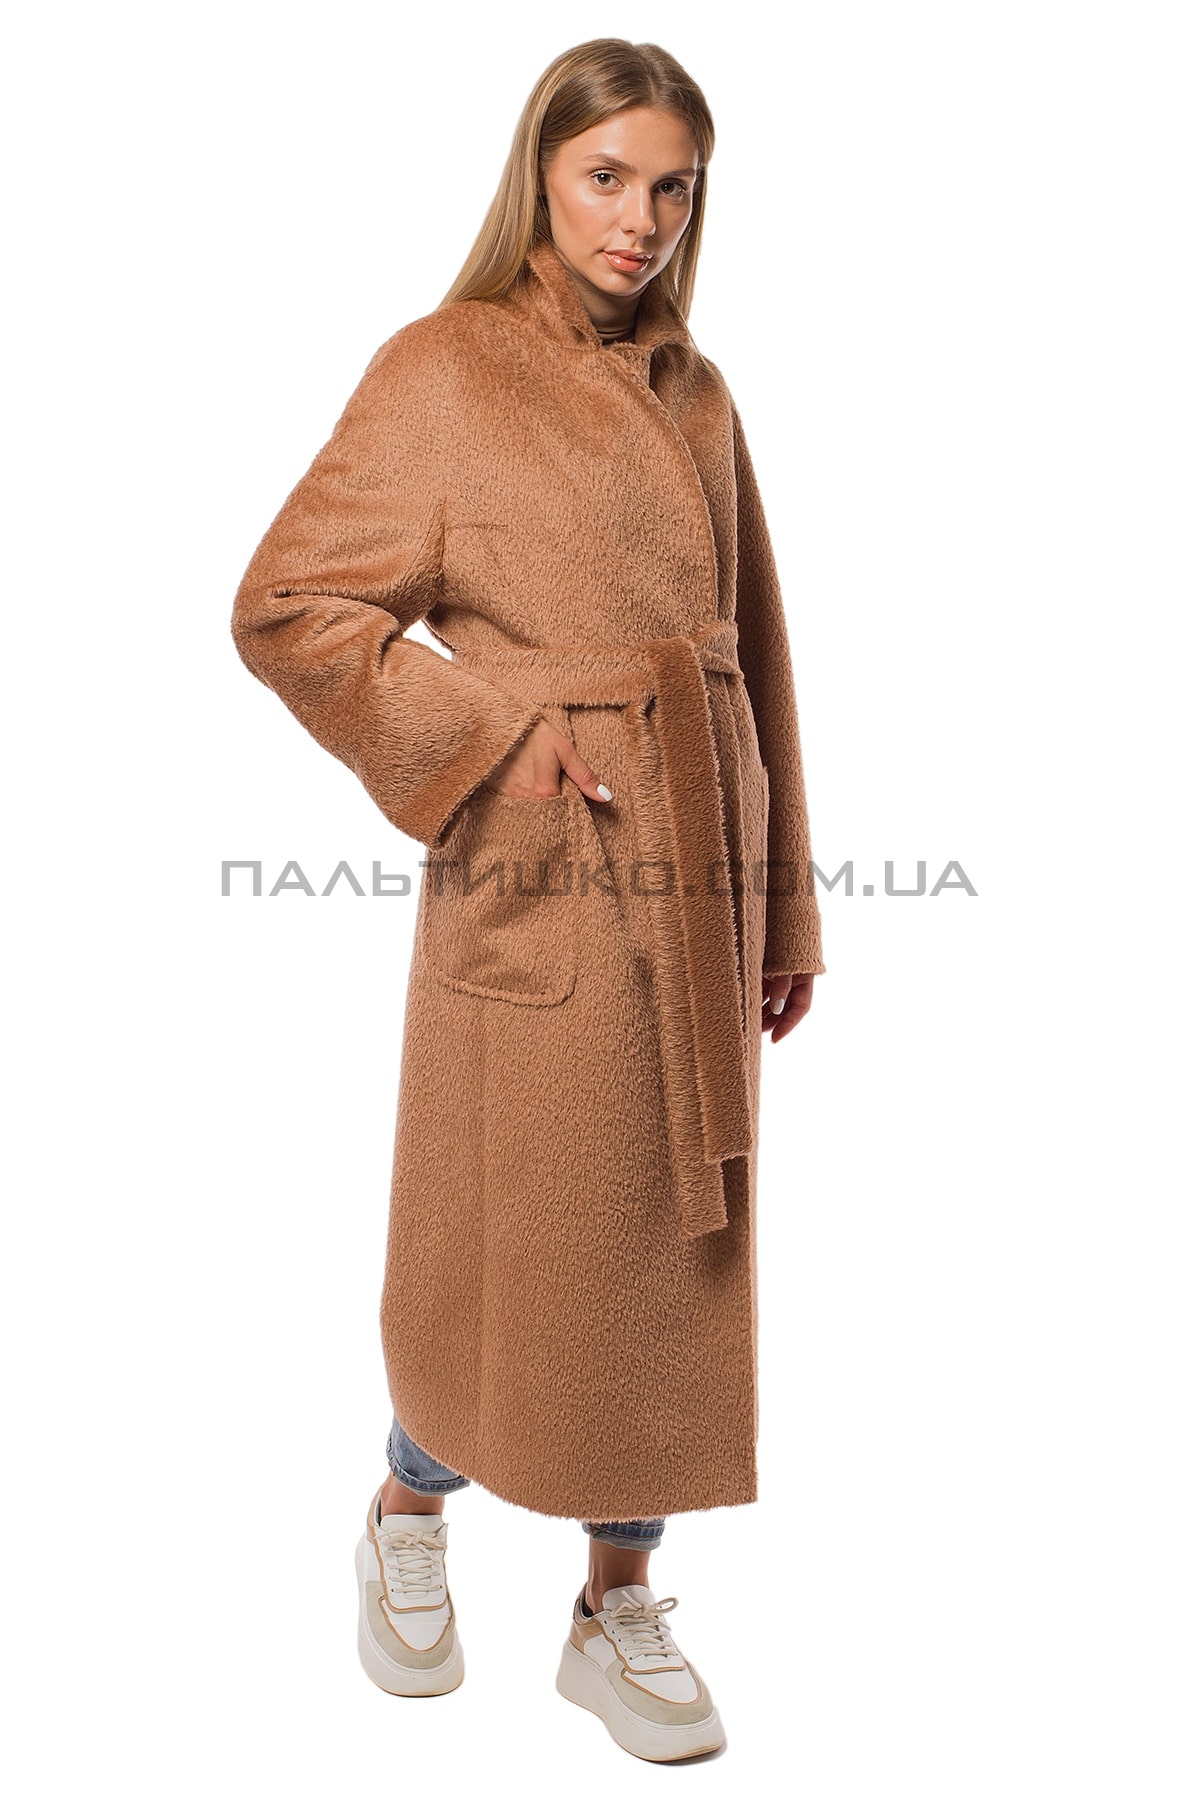  Женское пальто-шуба